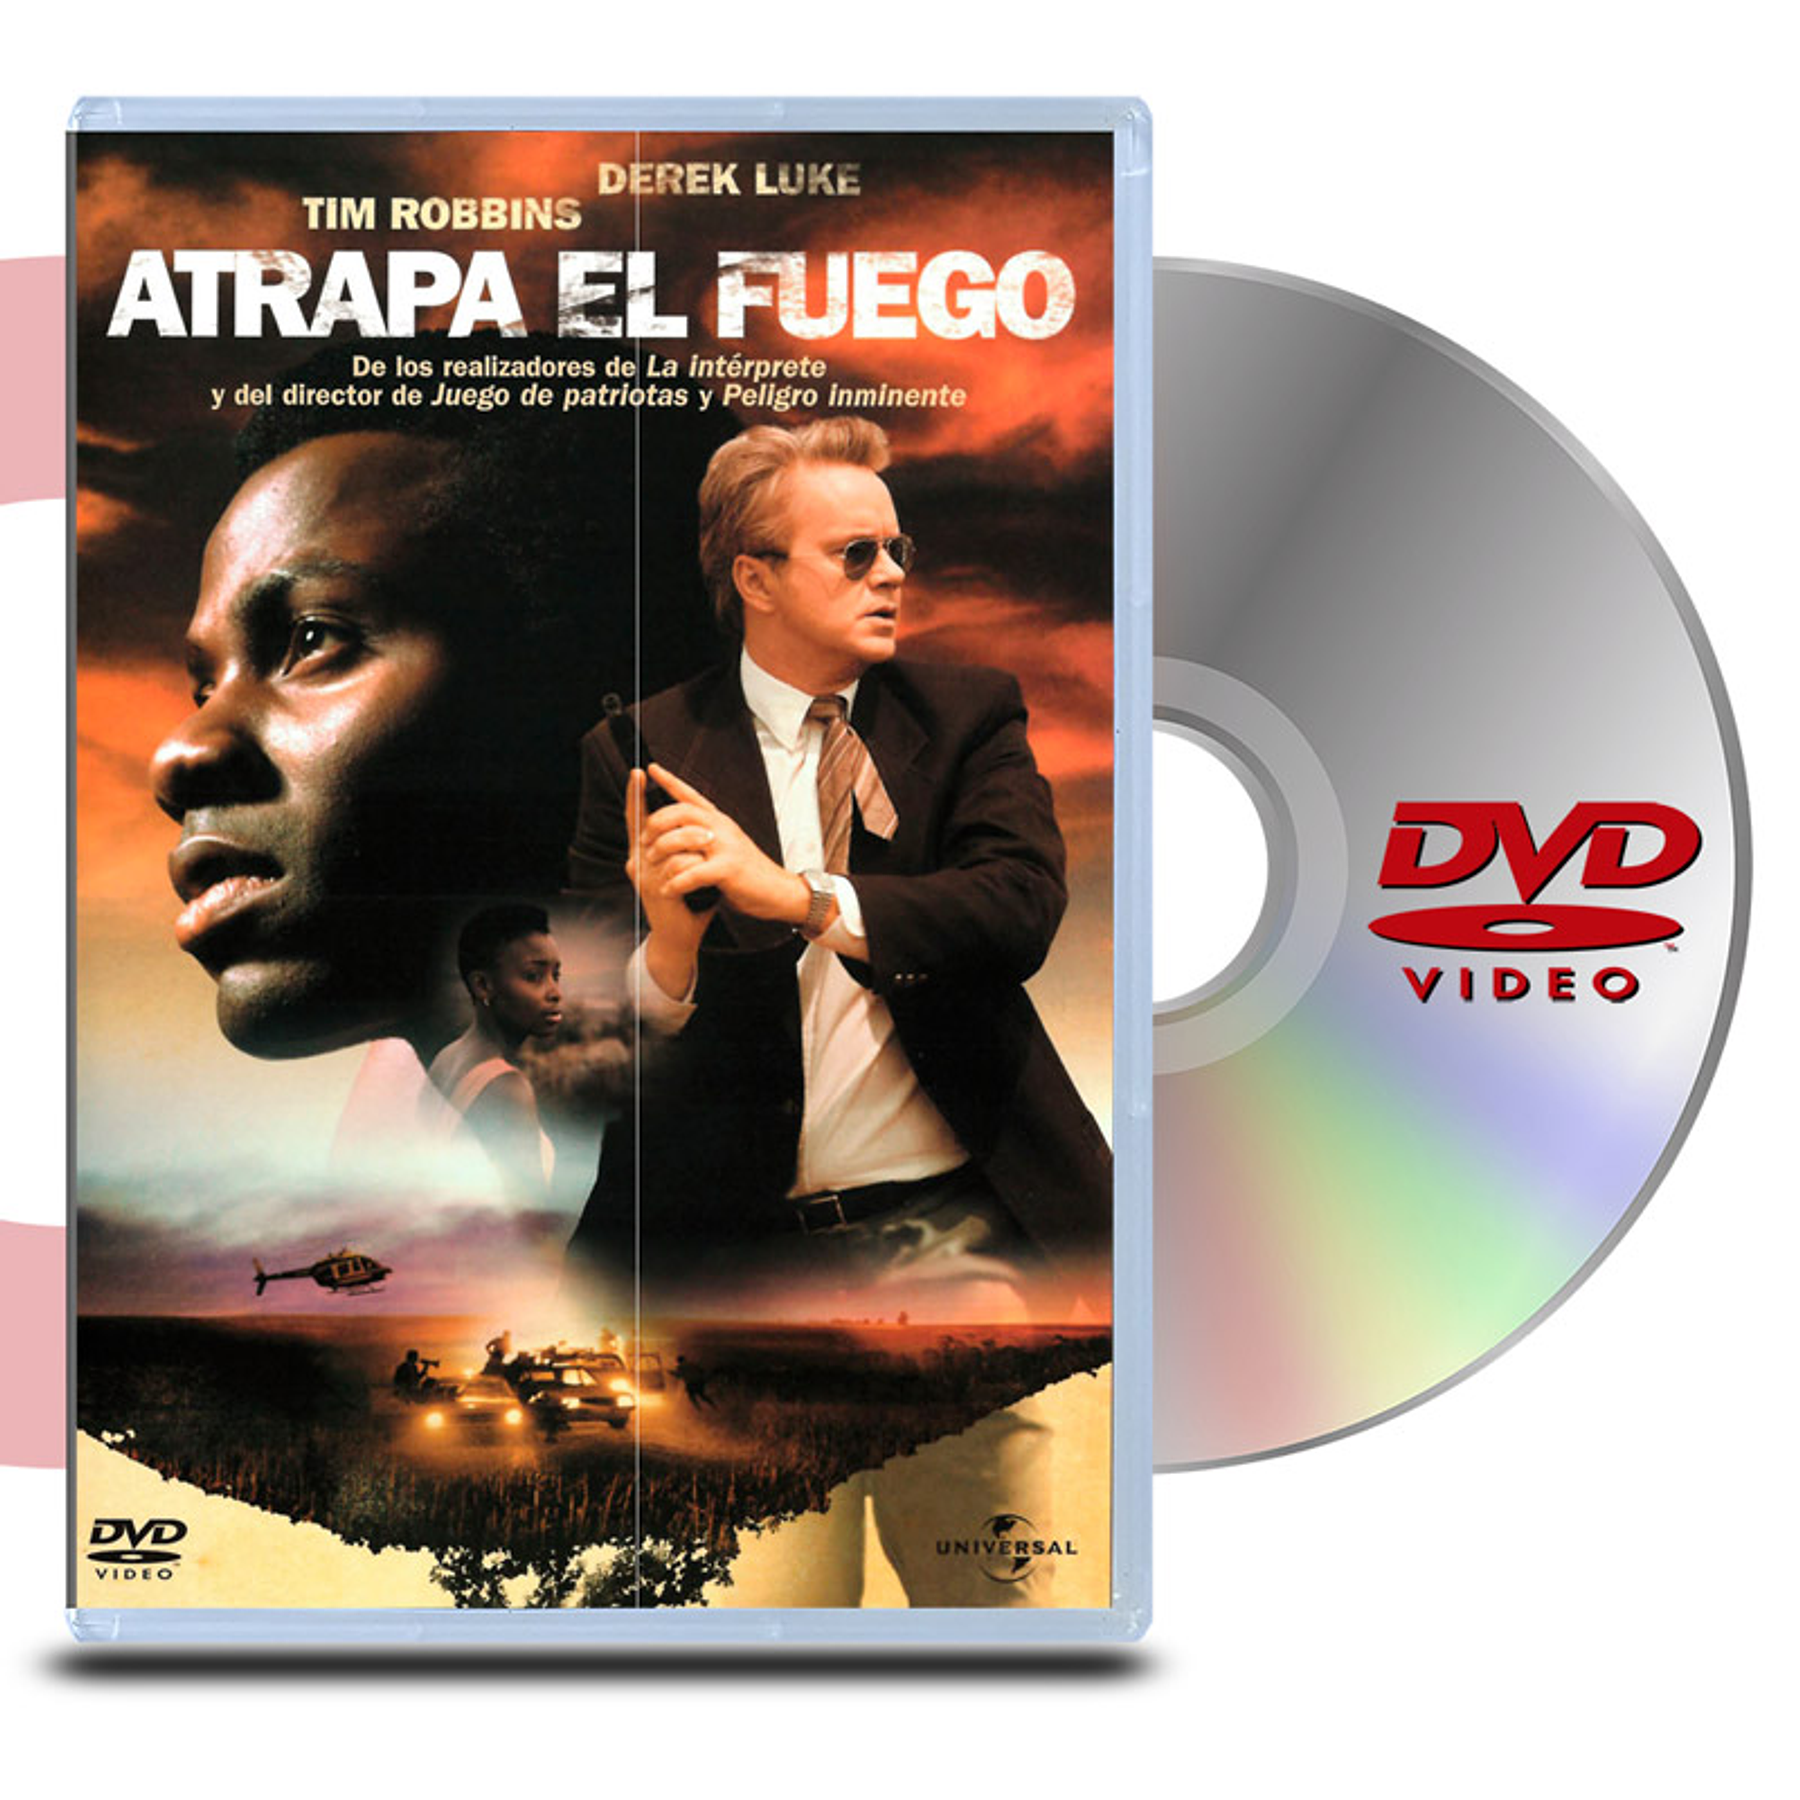 DVD ATRAPA EL FUEGO